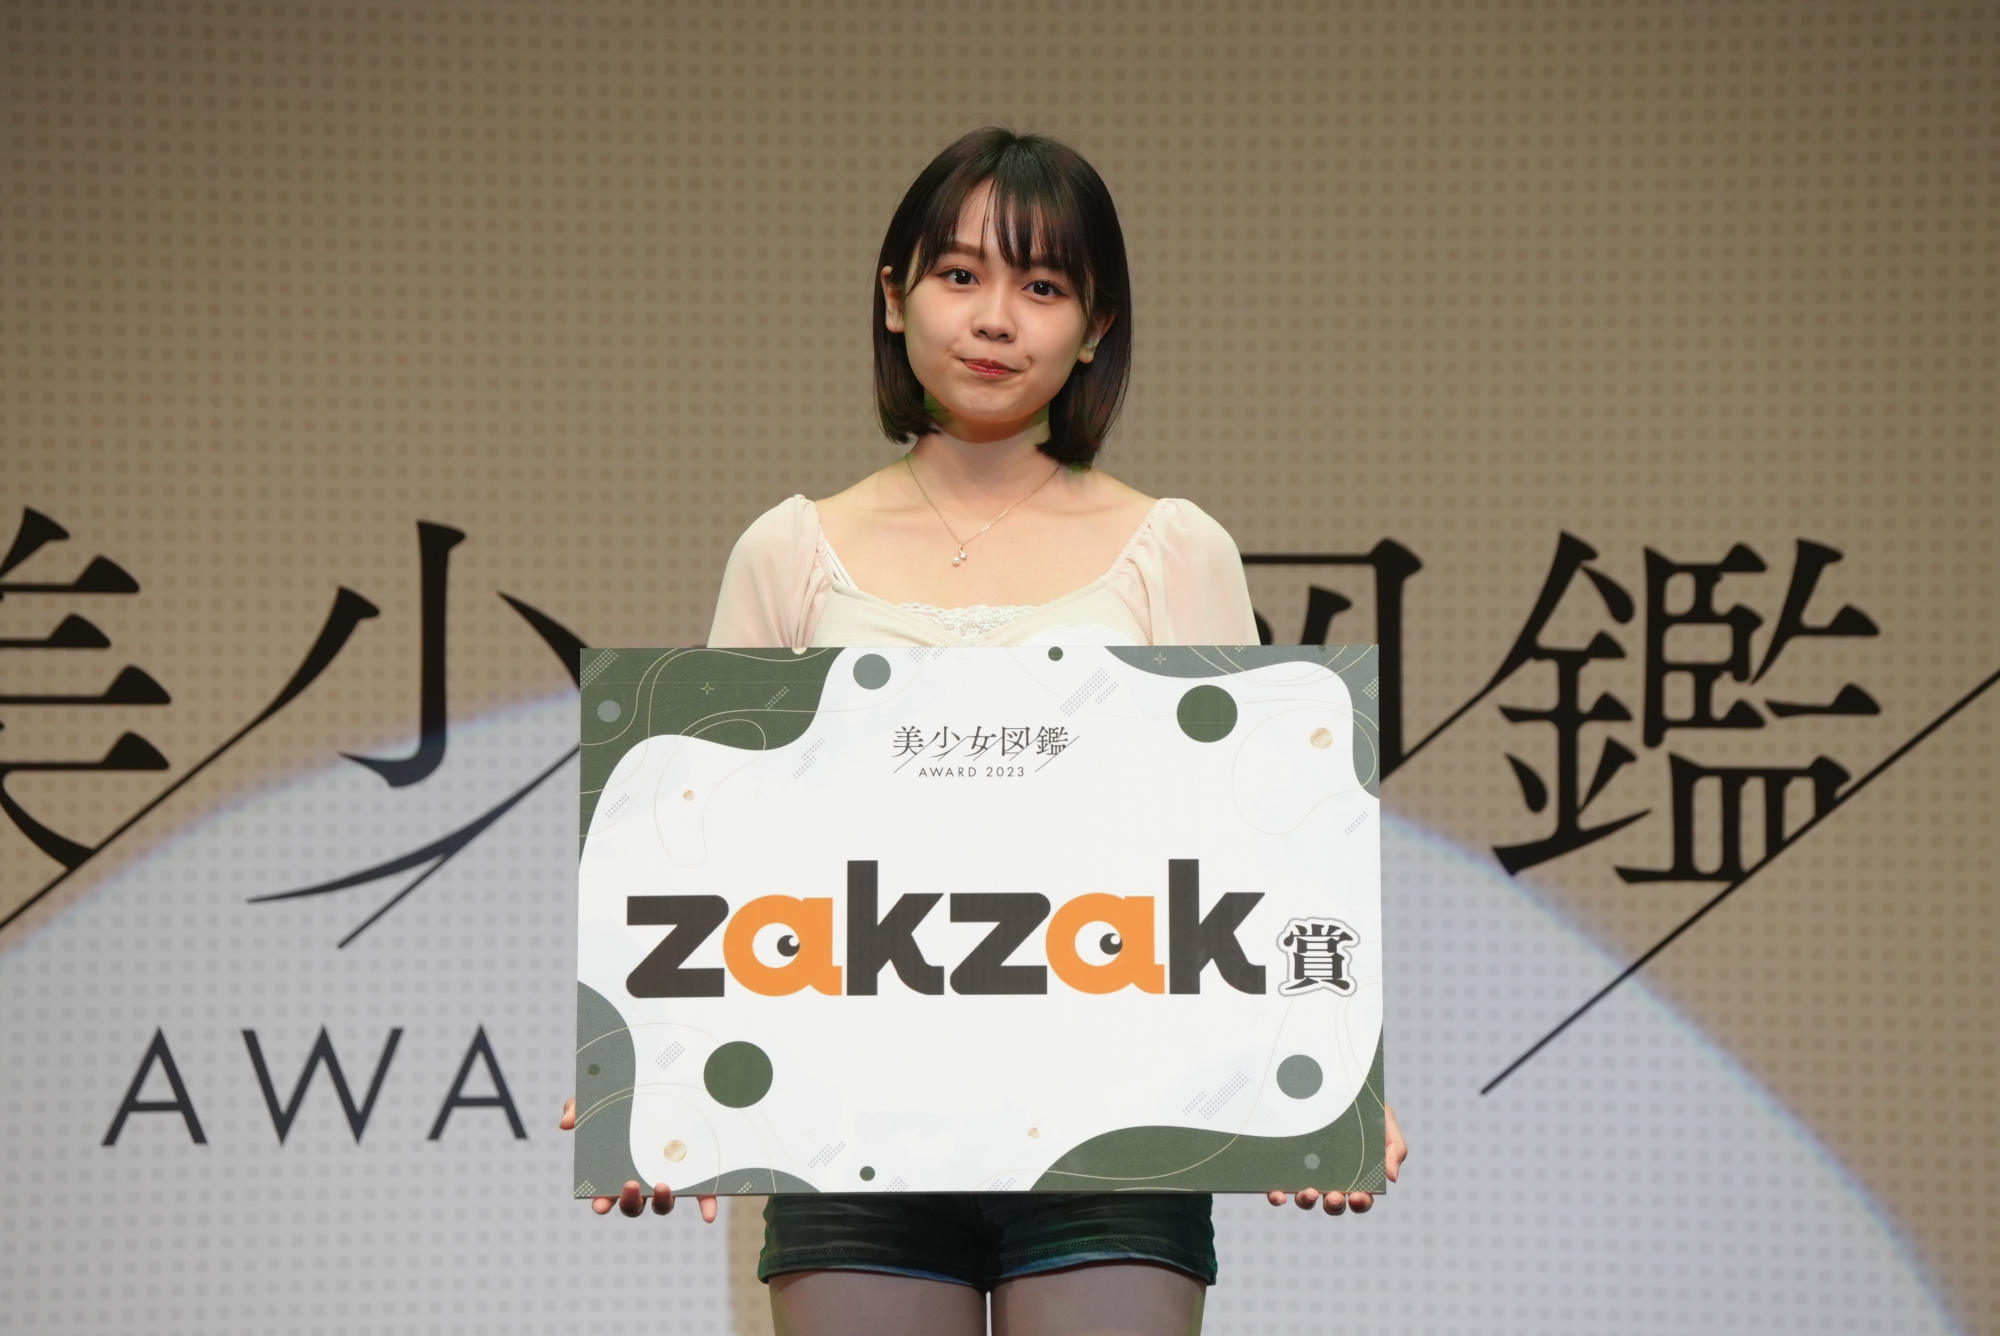 宮嶋くるみ『美少女図鑑AWARD 2023』zakzak賞